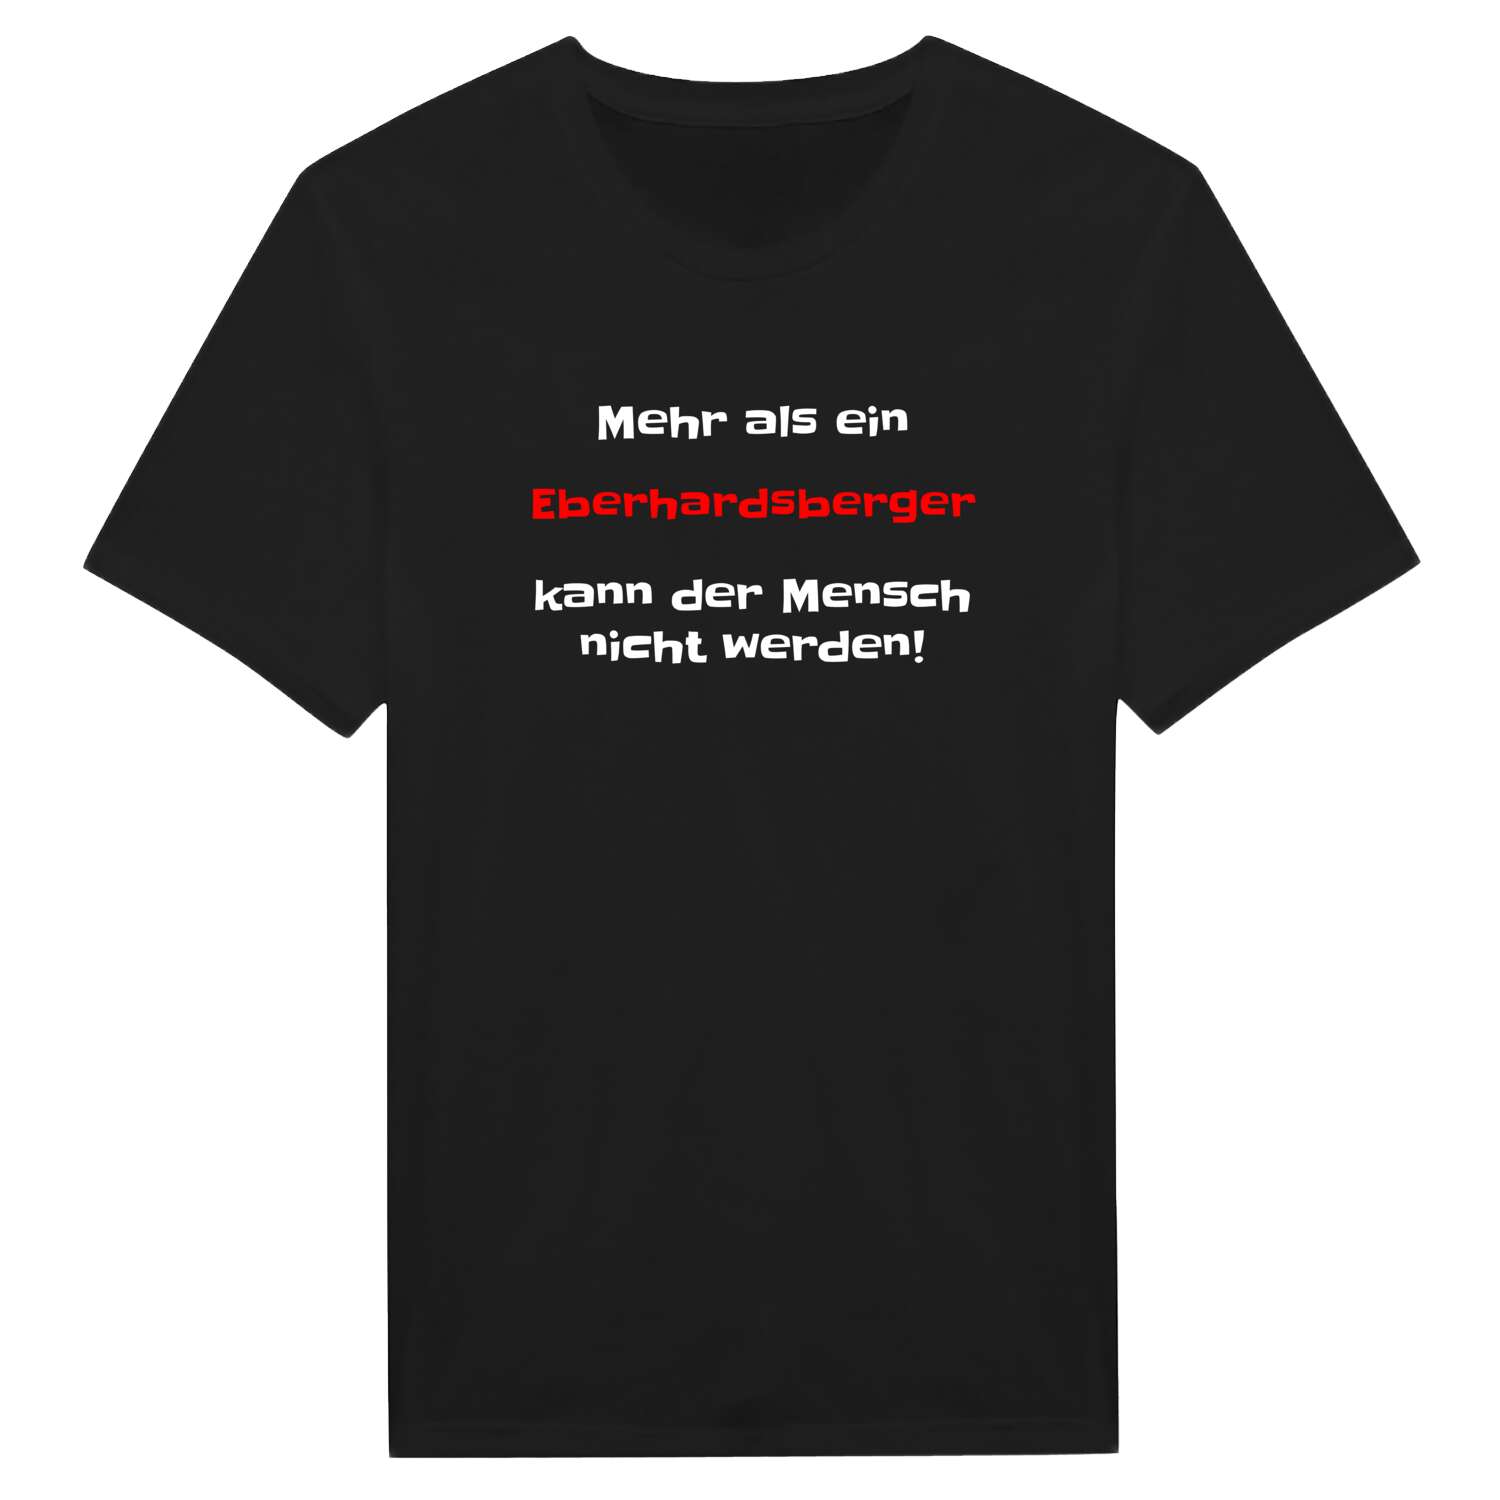 Eberhardsberg T-Shirt »Mehr als ein«